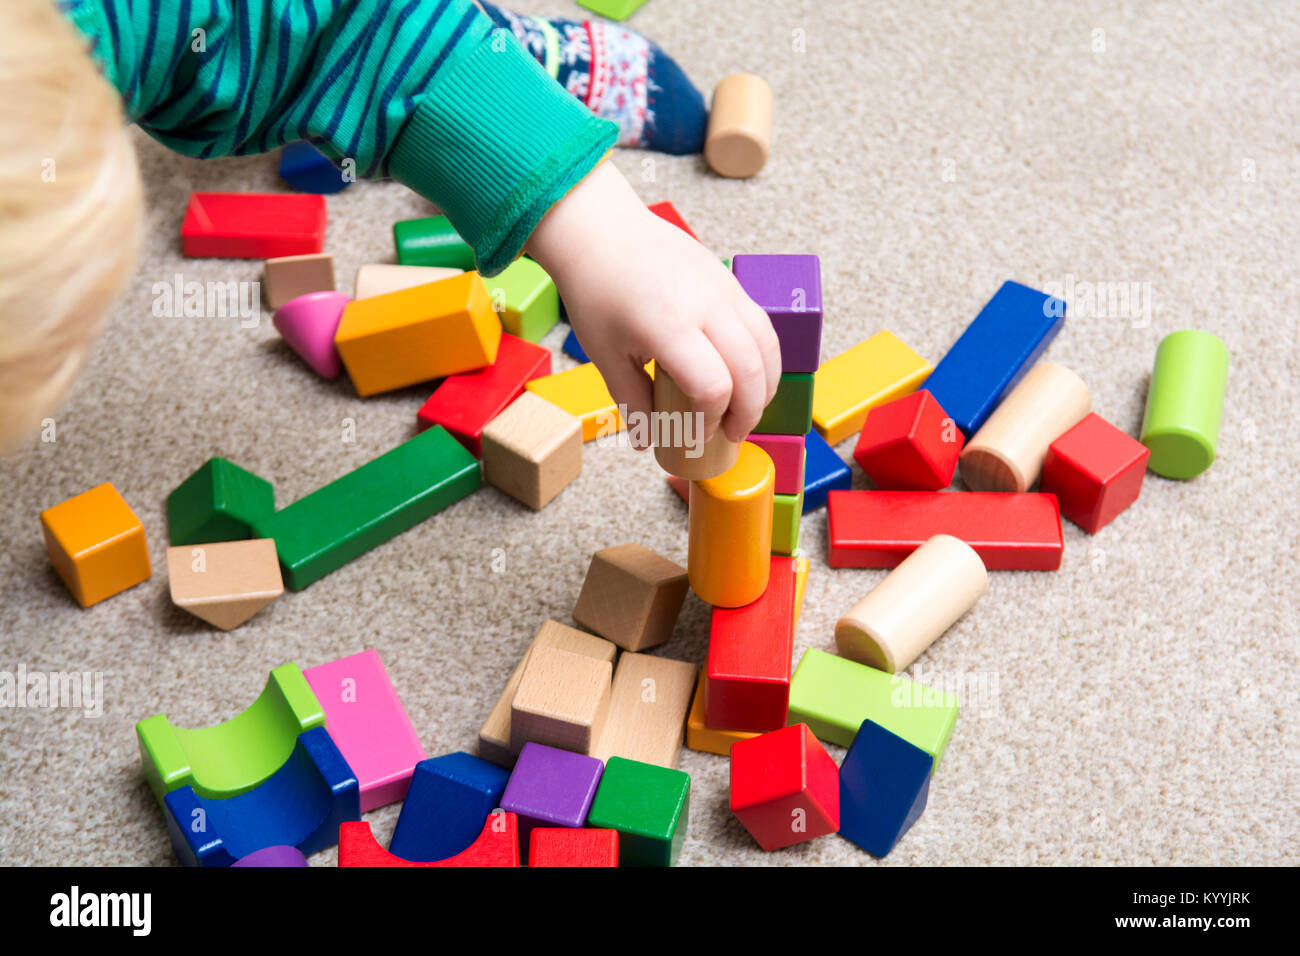 Niño jugando con bloques de construcción el aprendizaje de nuevas habilidades, juego educativo con juguetes para aprender en casa con los padres Foto de stock